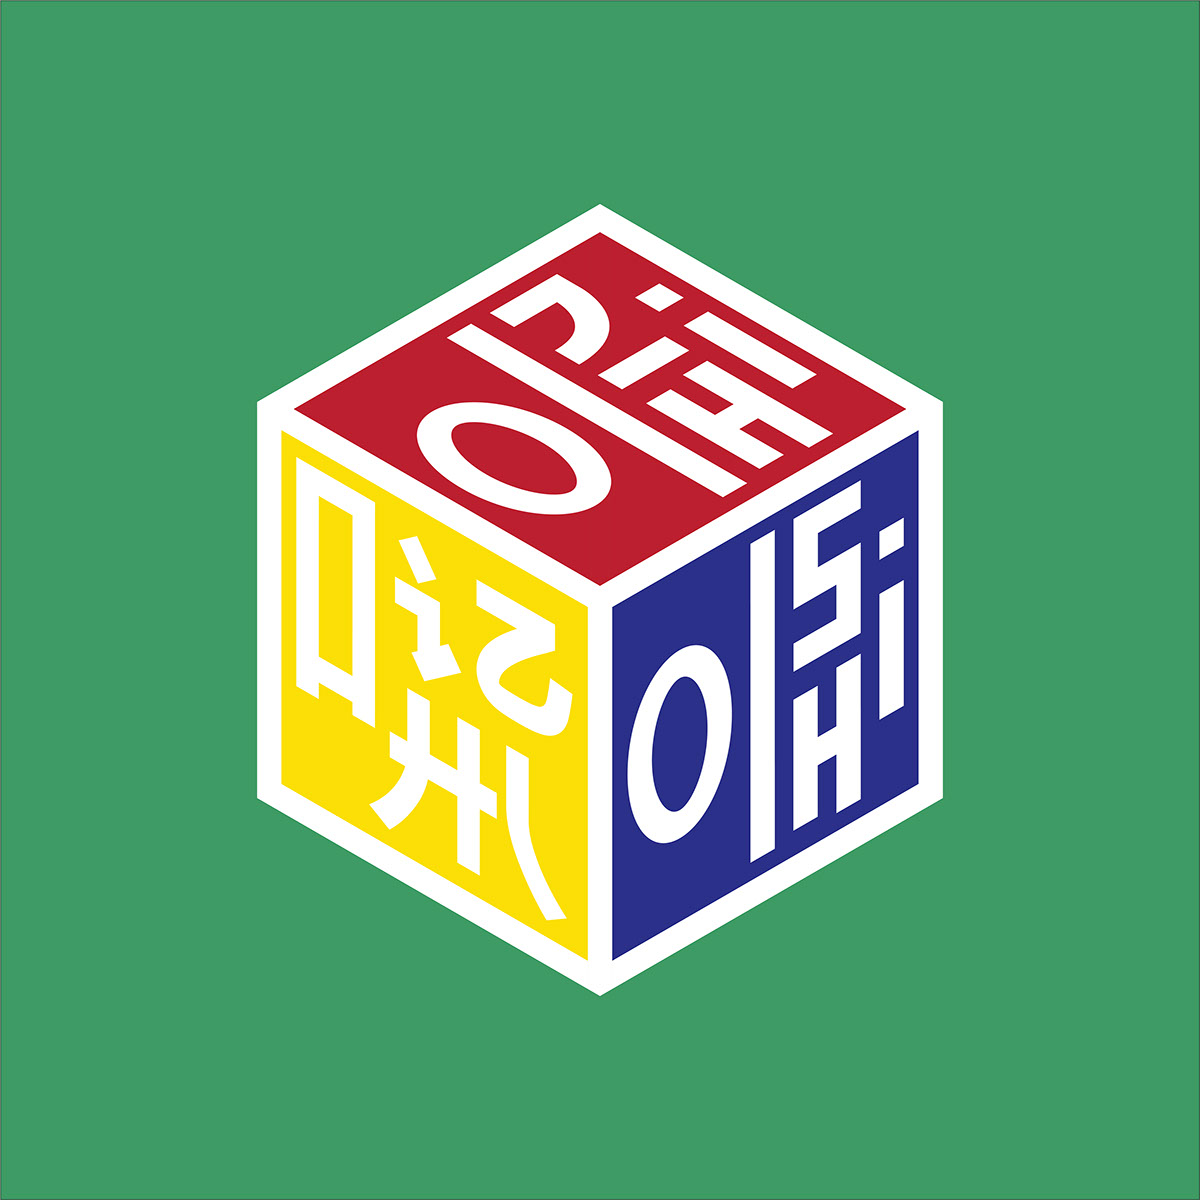 Oishi Cube rendition image